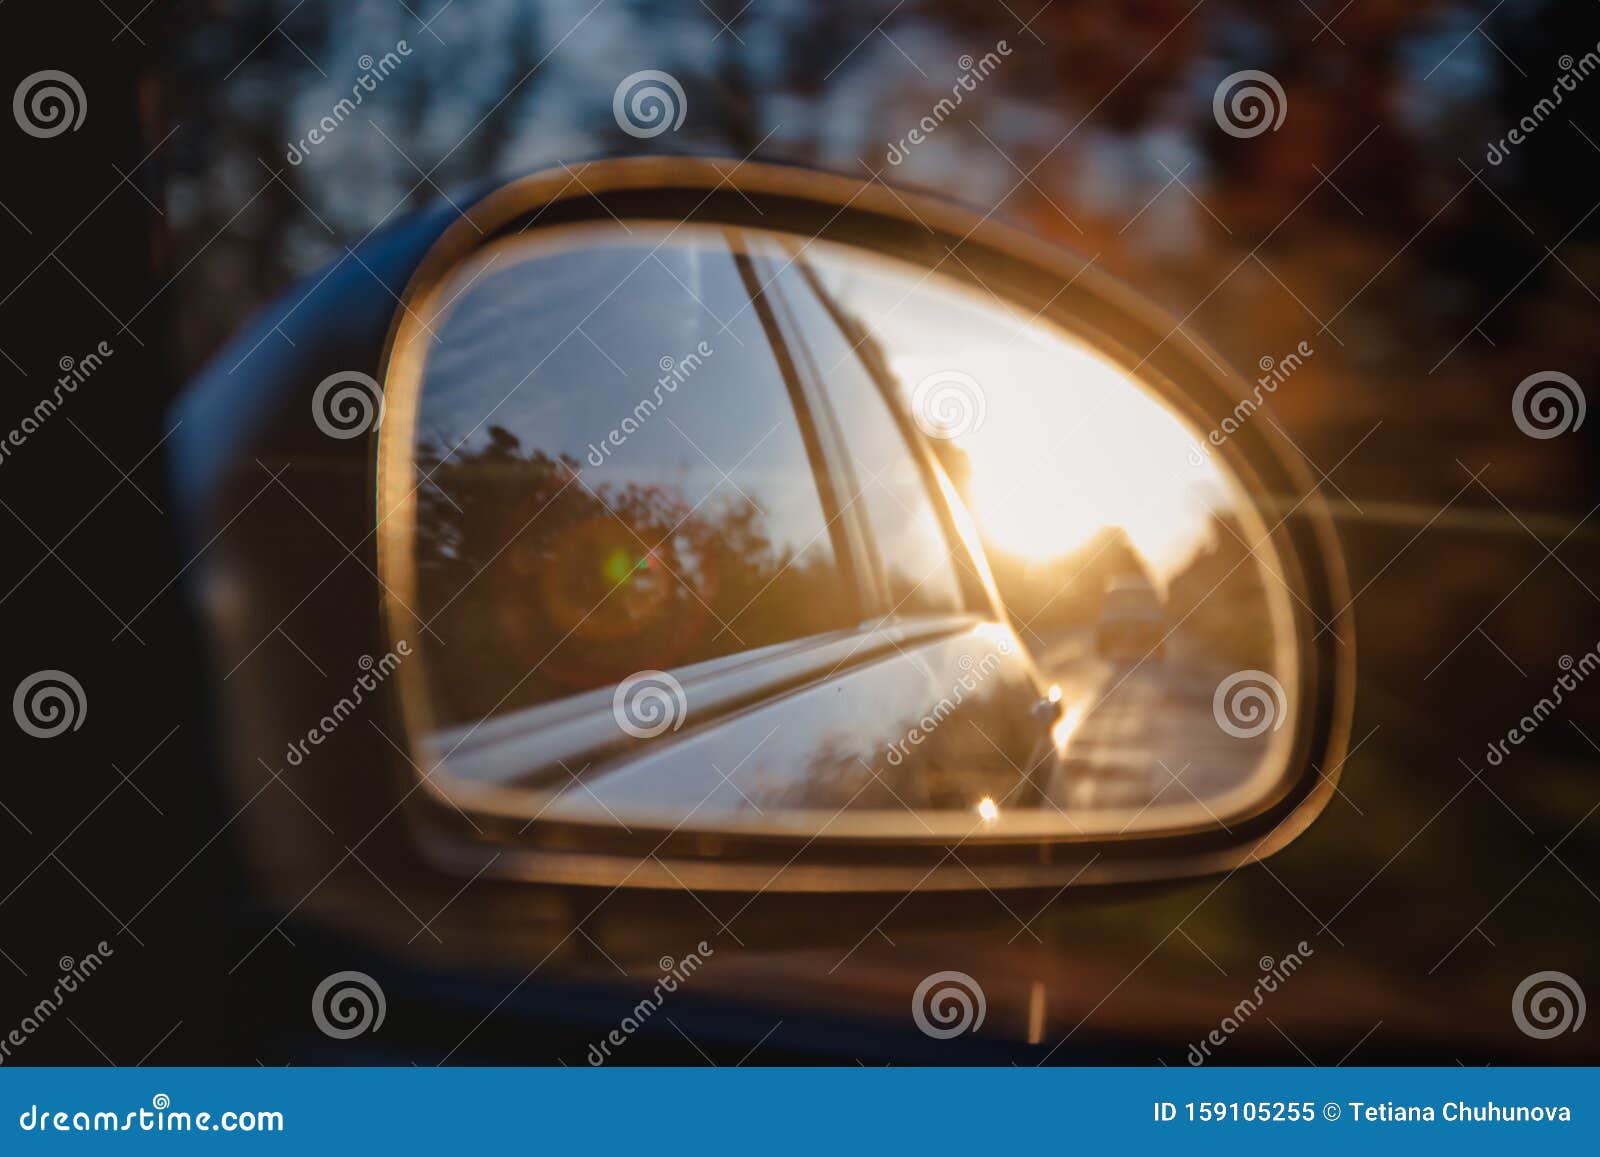 Autospiegel - Auto Rückspiegel mit Orangen, roten Sonnenuntergang